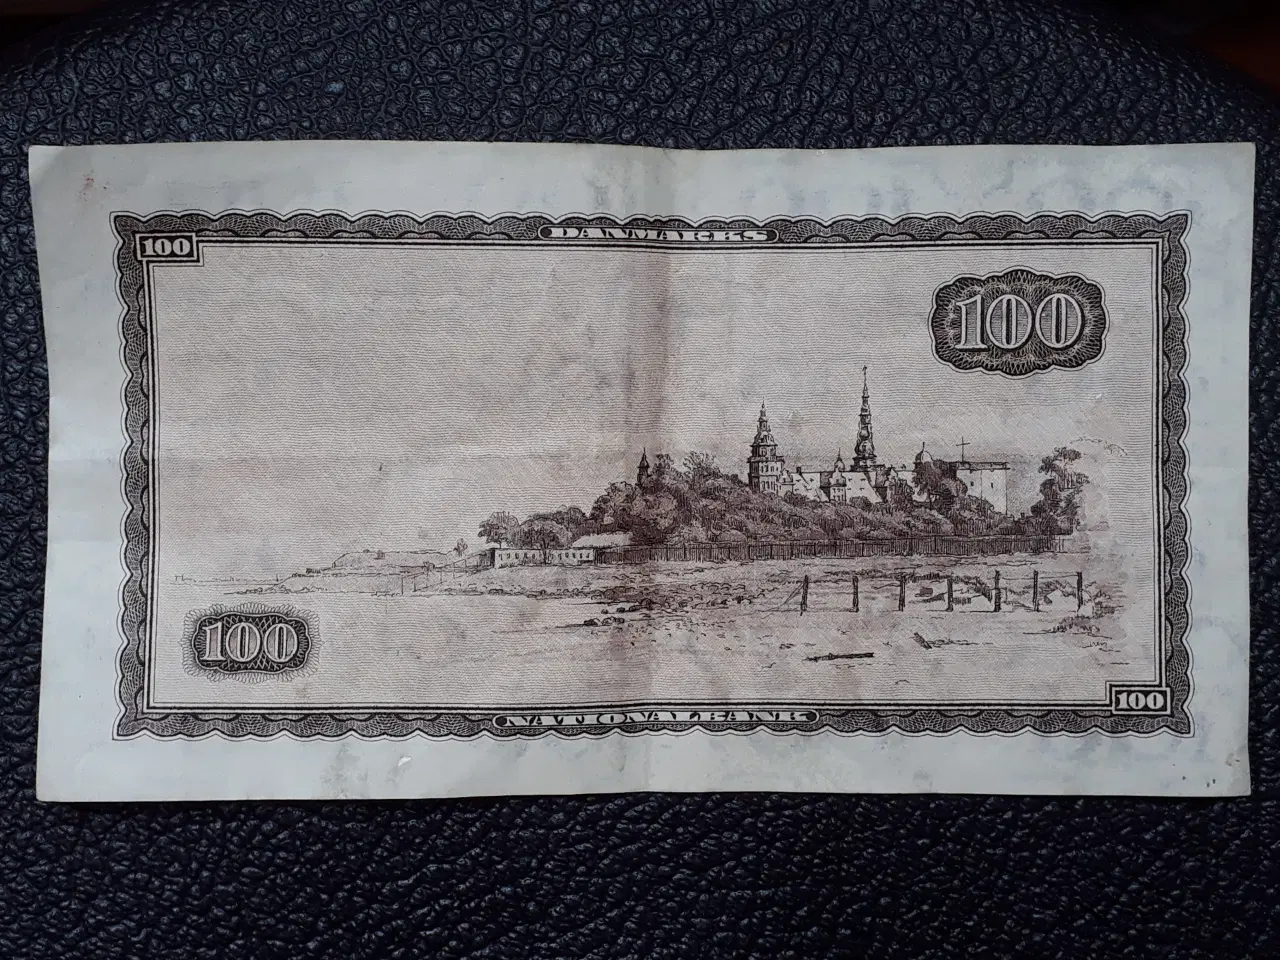 Billede 1 - 100 kroner seddel fra 1965